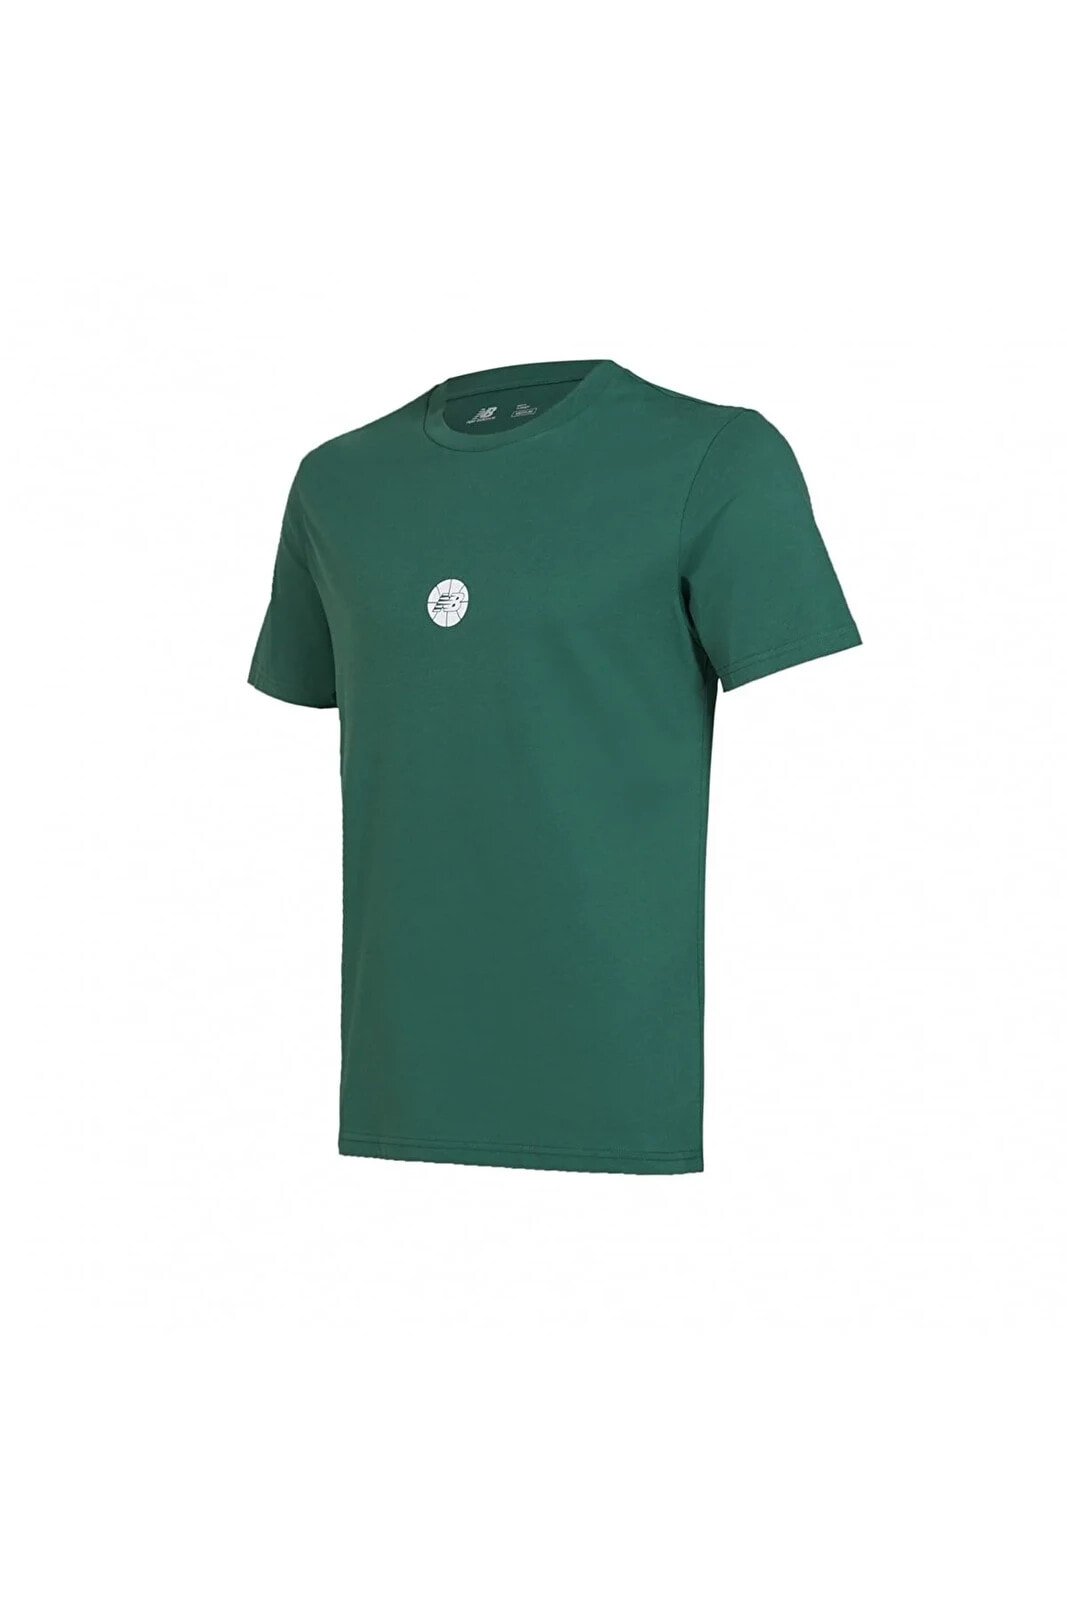 Lifestyle Yeşil Erkek Tişört Mnt1343-grn